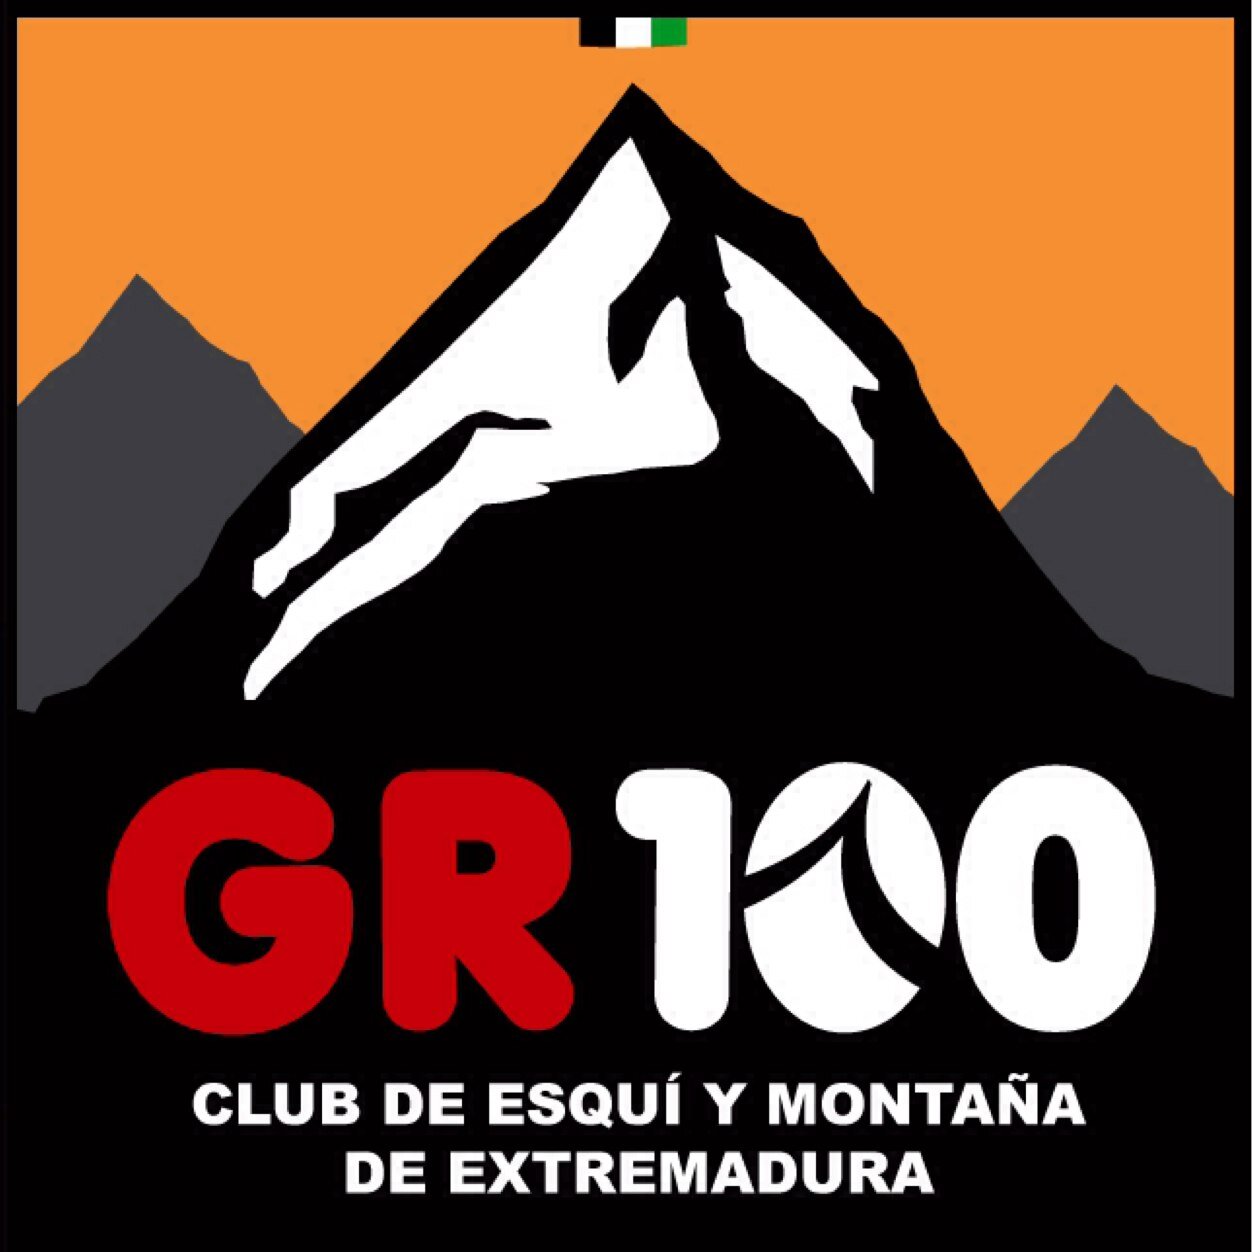 Club de Esquí y Montaña de Extremadura "GR100"